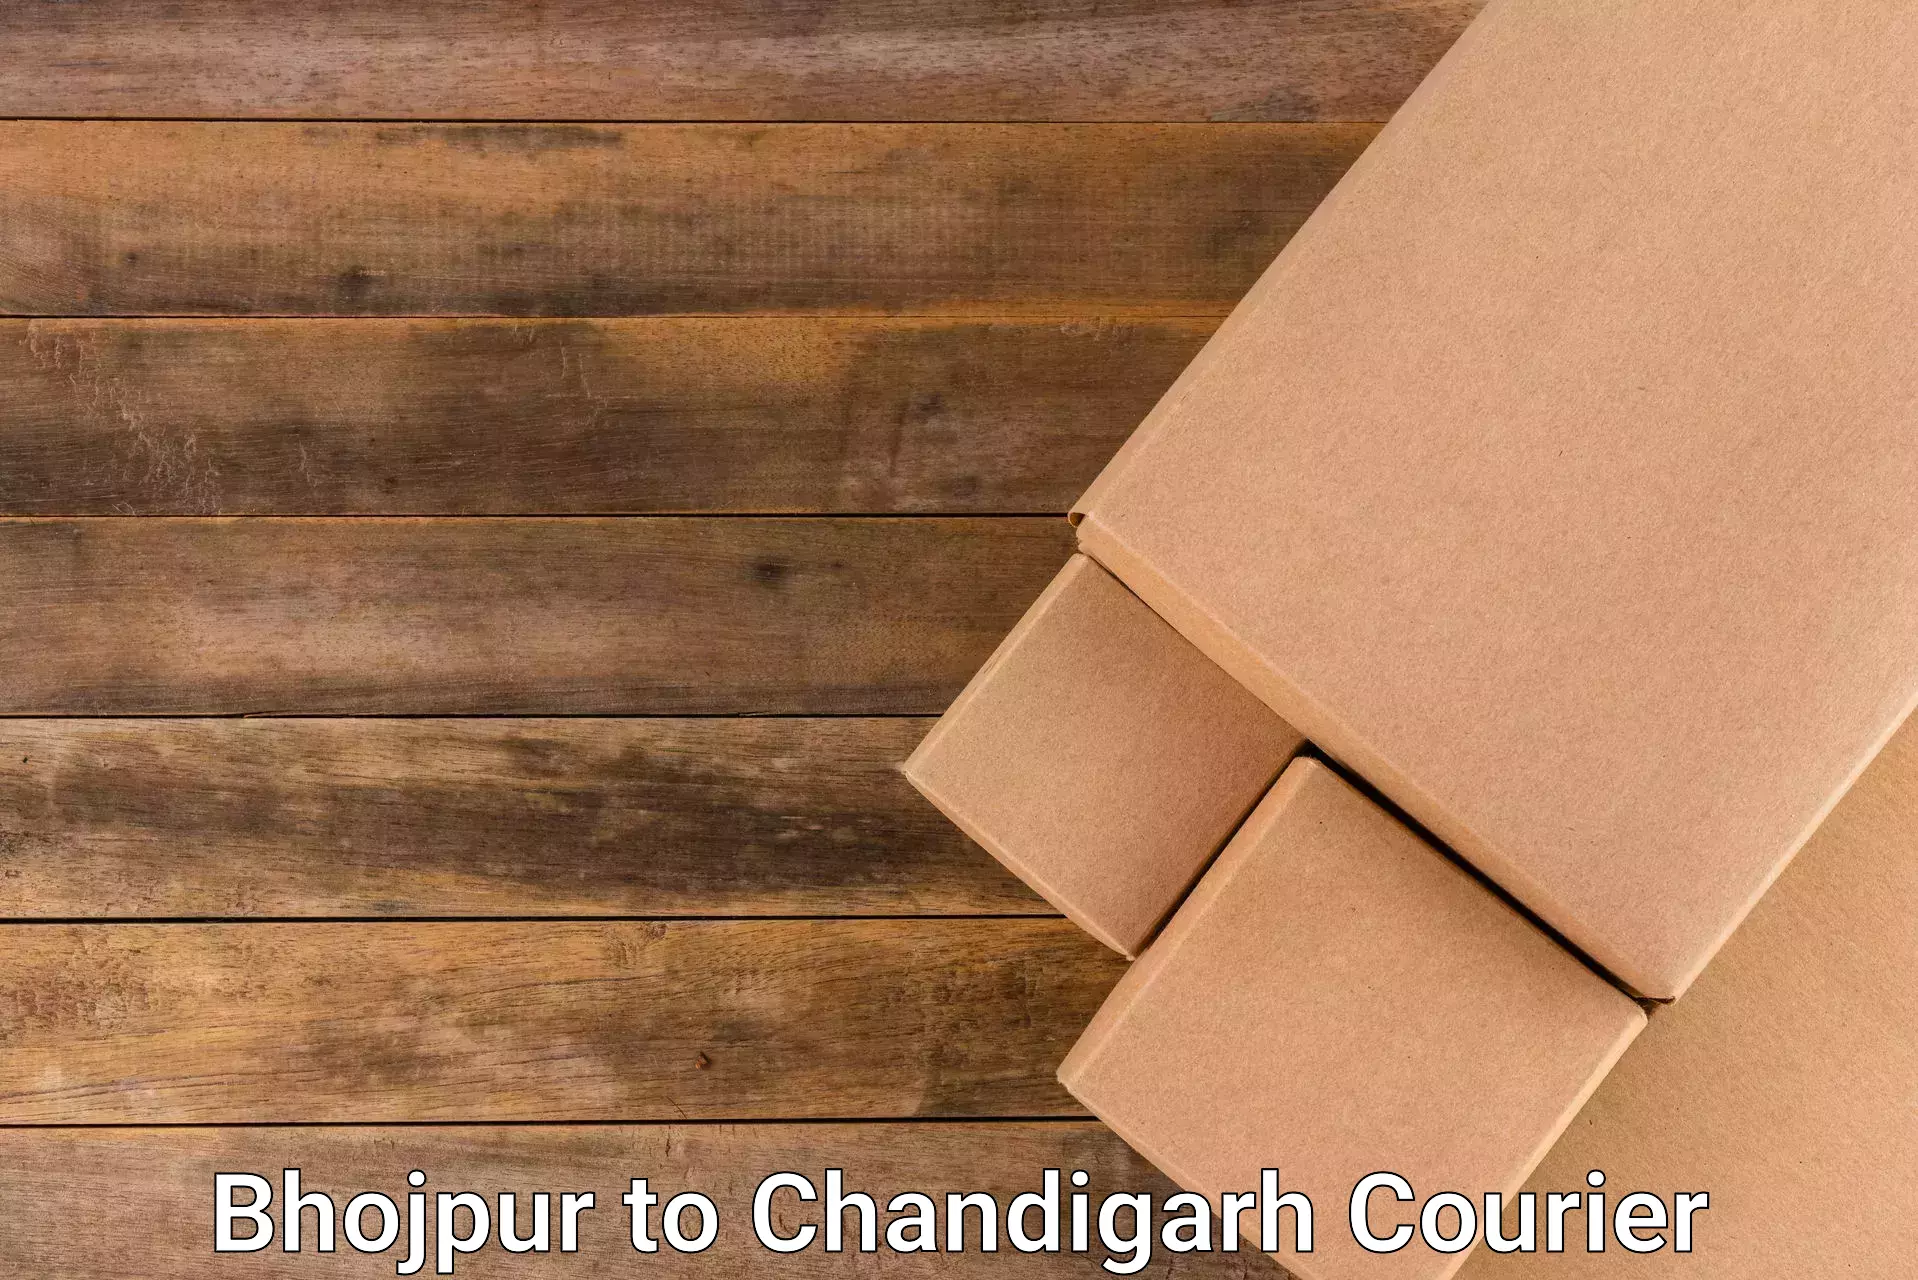 Efficient freight service Bhojpur to Chandigarh